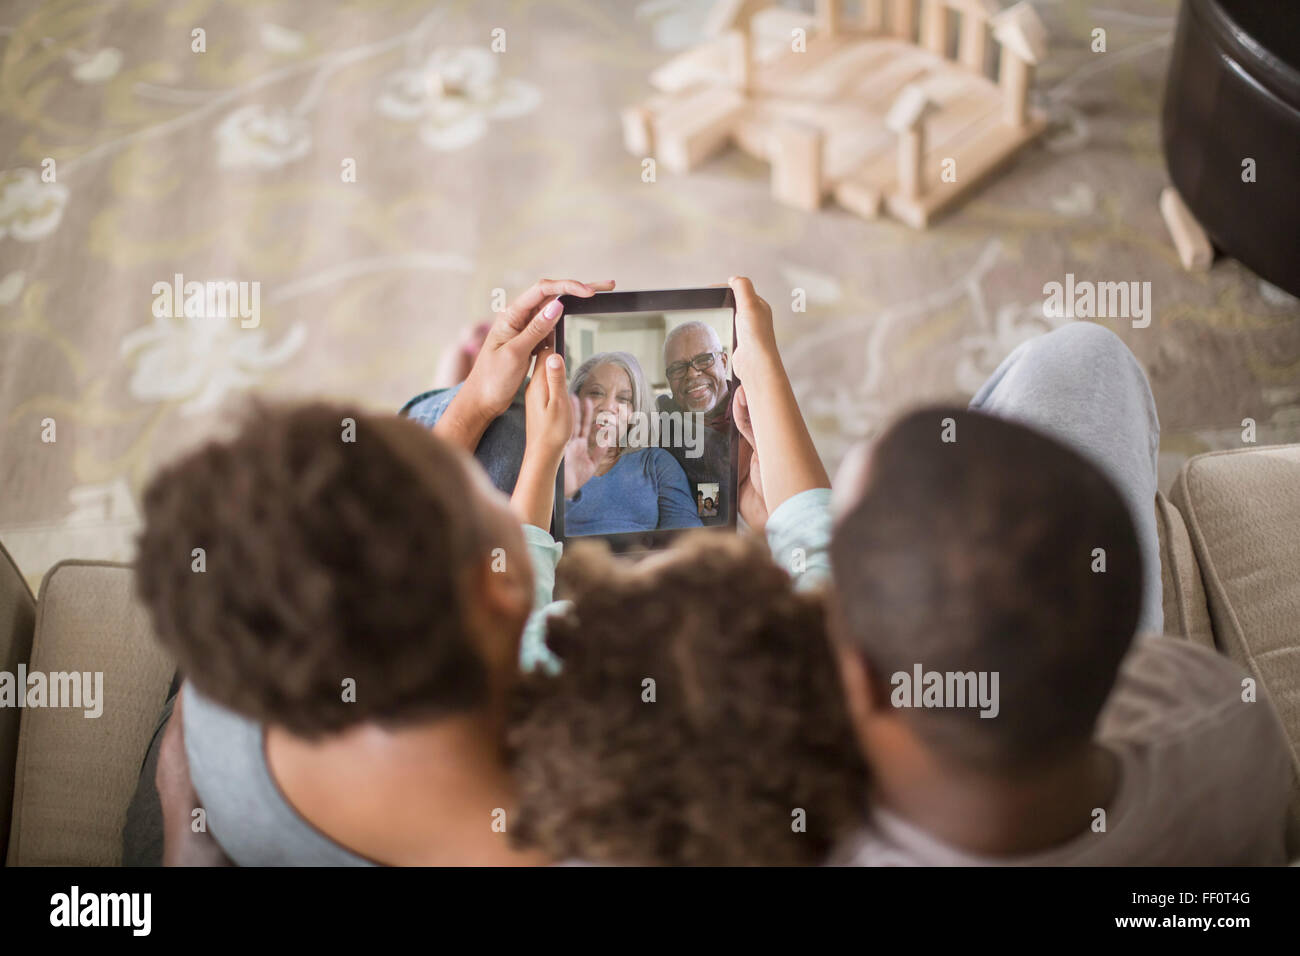 Familia video chat con tableta digital Foto de stock